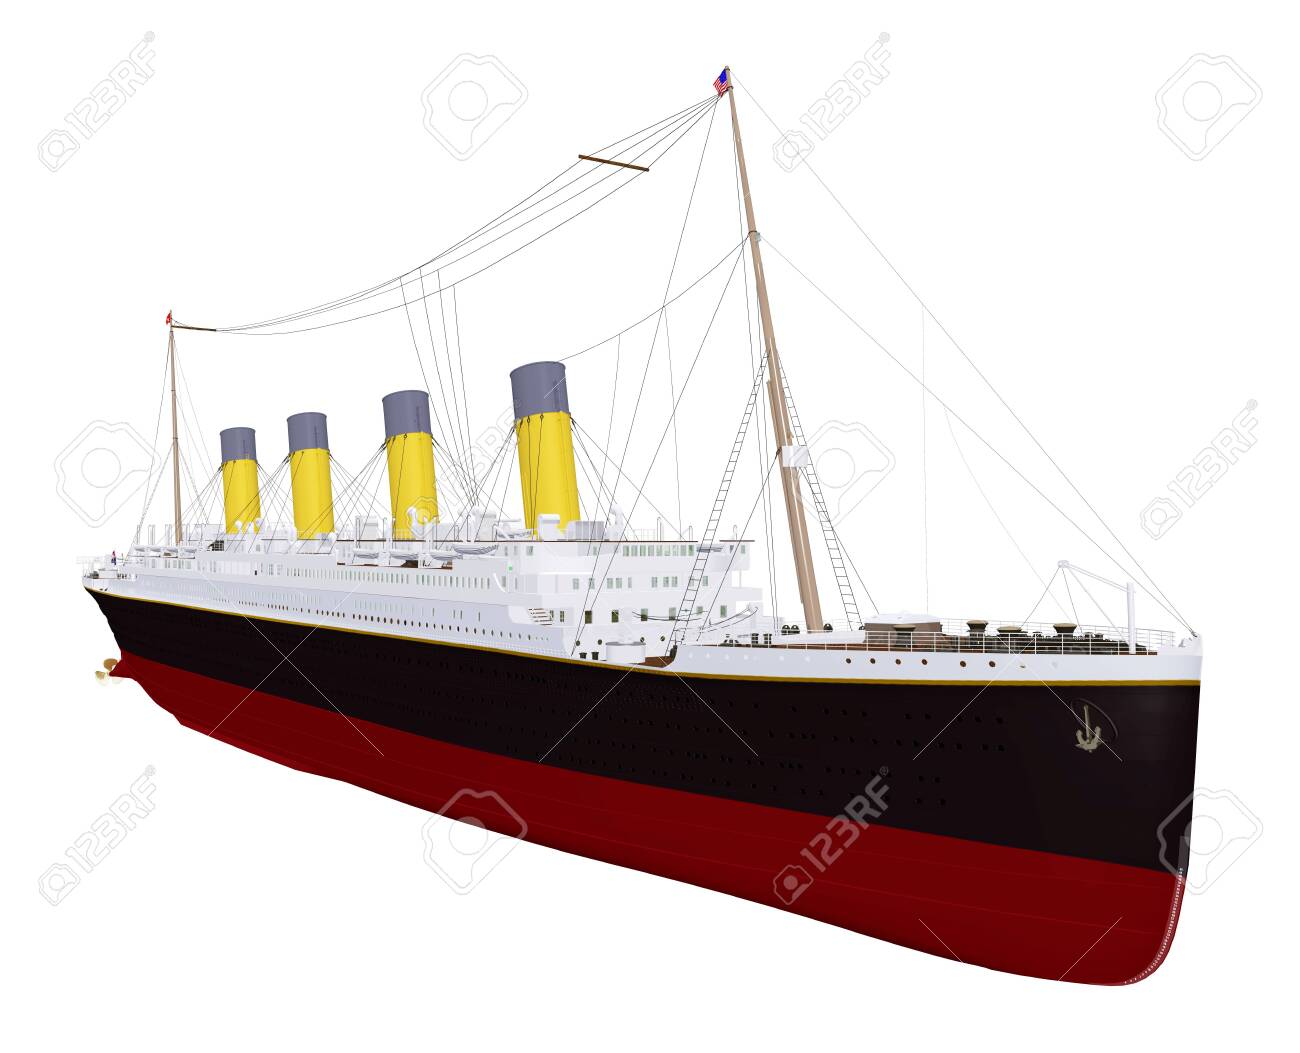 Historical Ship Titanic Isolated On White Background Stock Photo